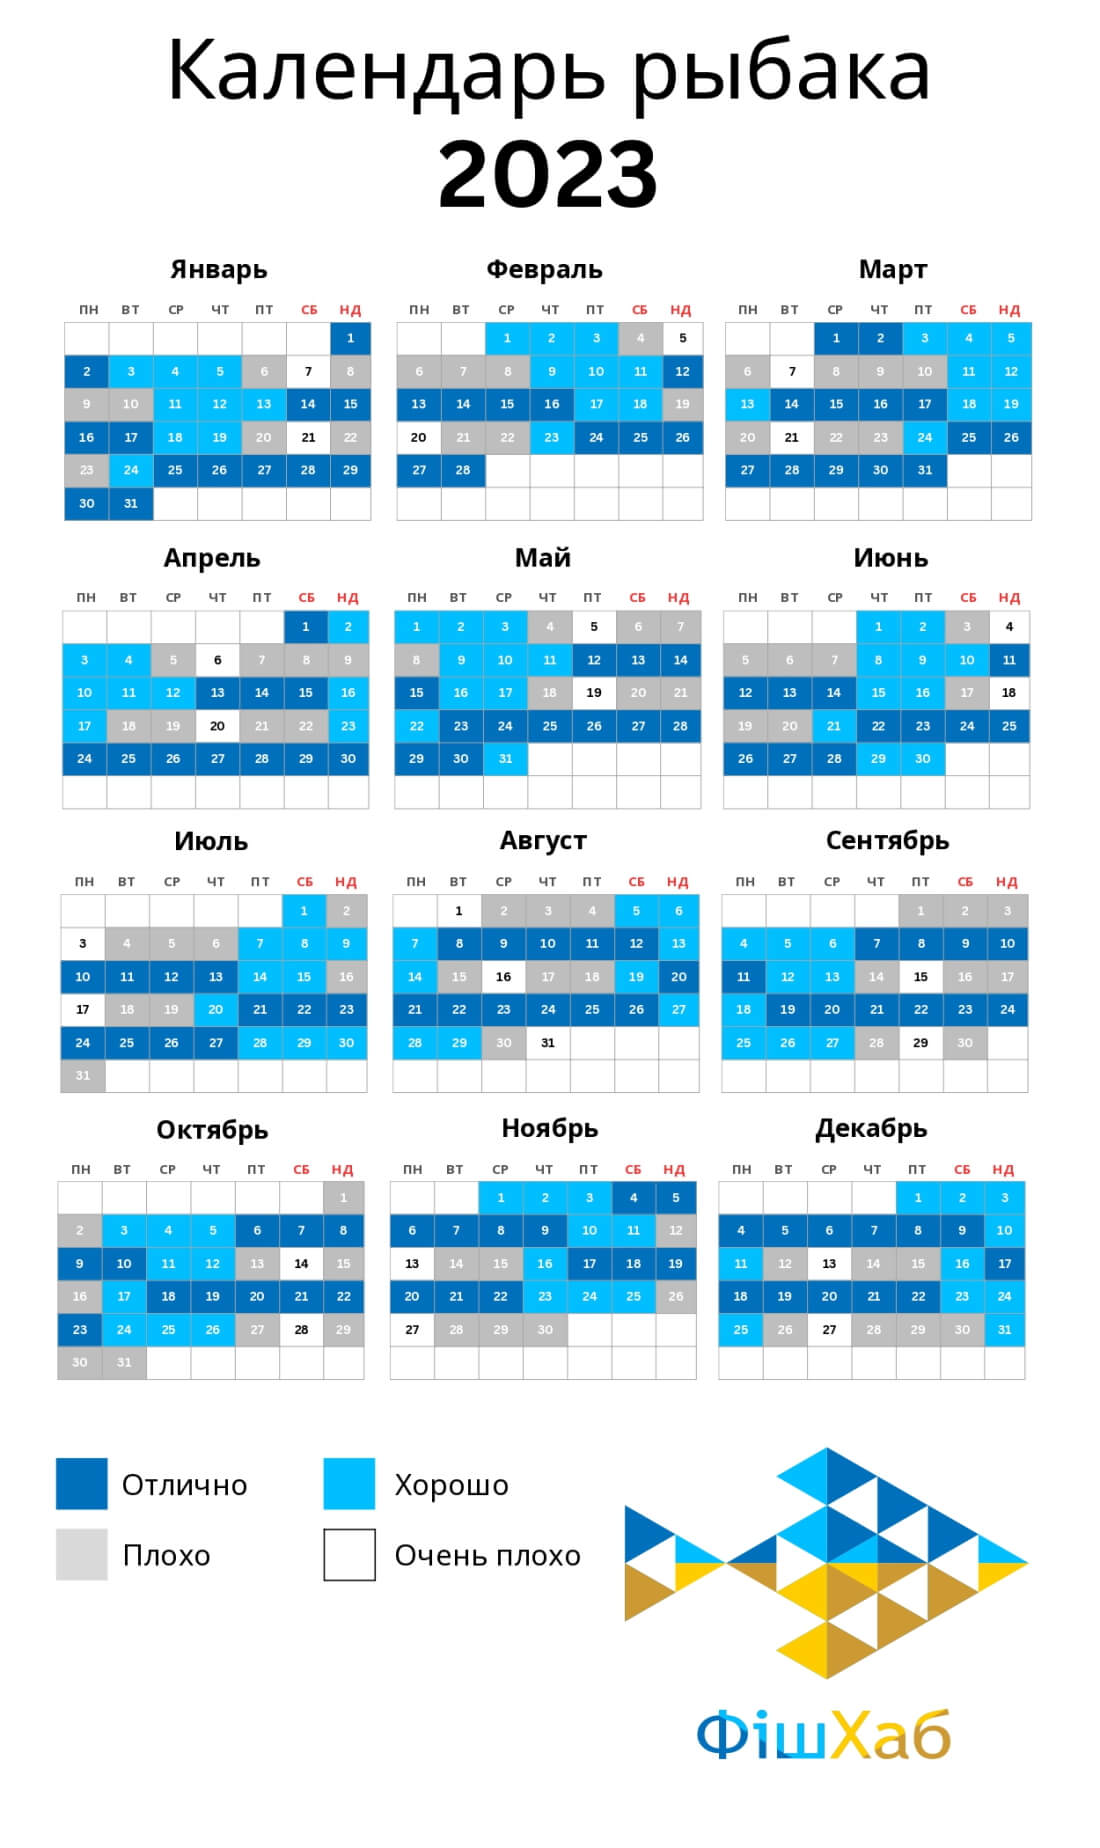 Календарь рыбака на 2023 год | ФішХаб